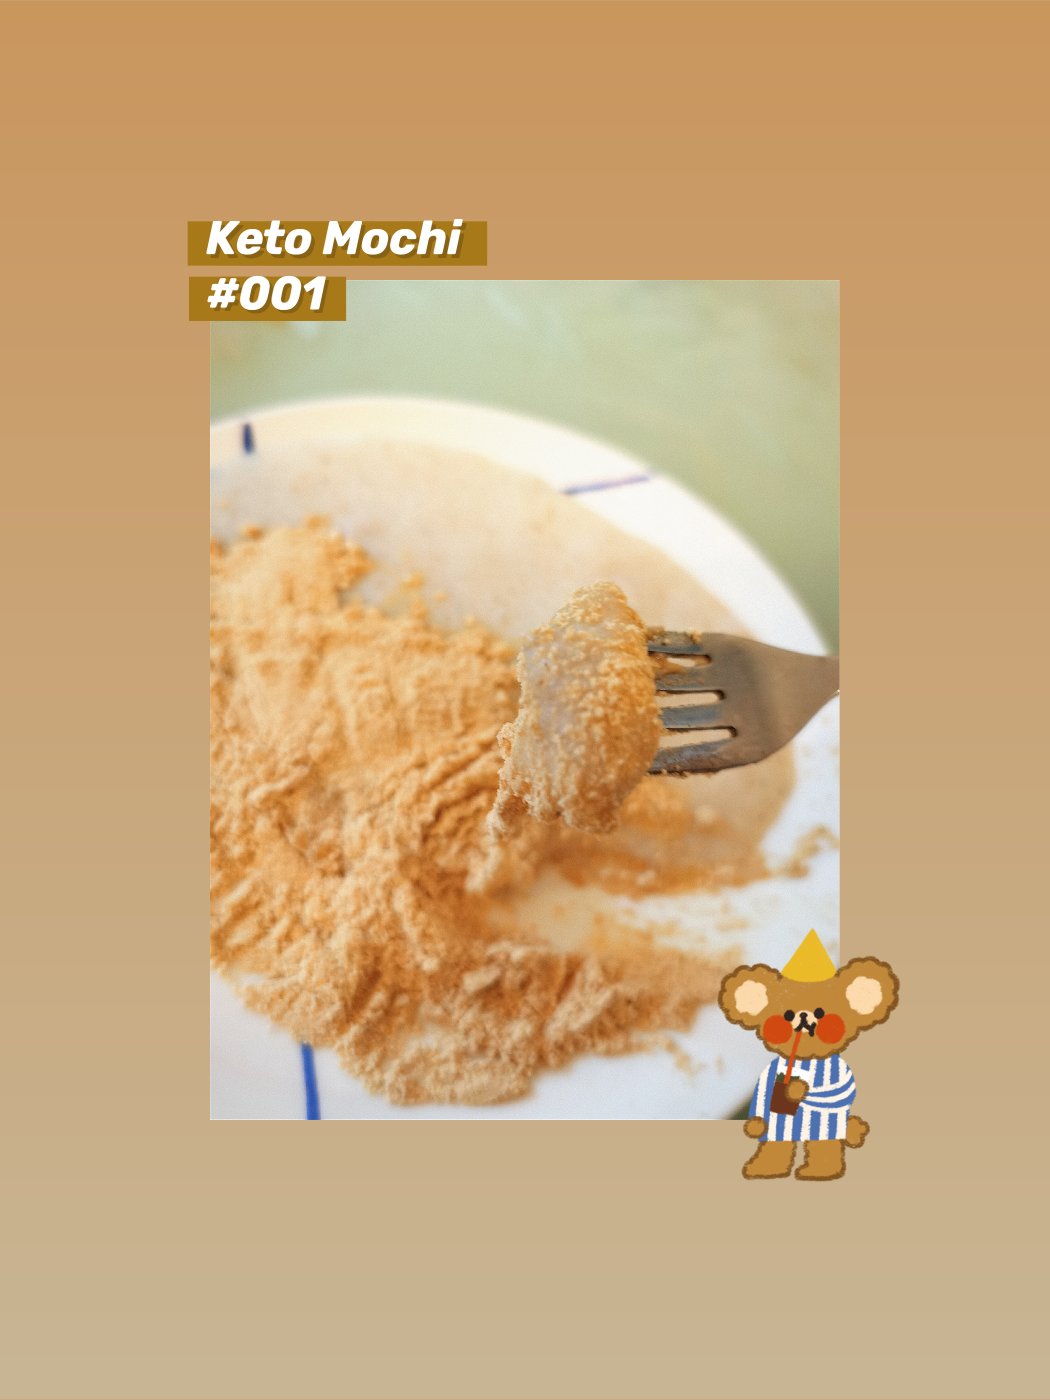 [keto mochi] 2分钟生酮麻薯 低碳无负担麻薯 可变换衍生年糕，团子等